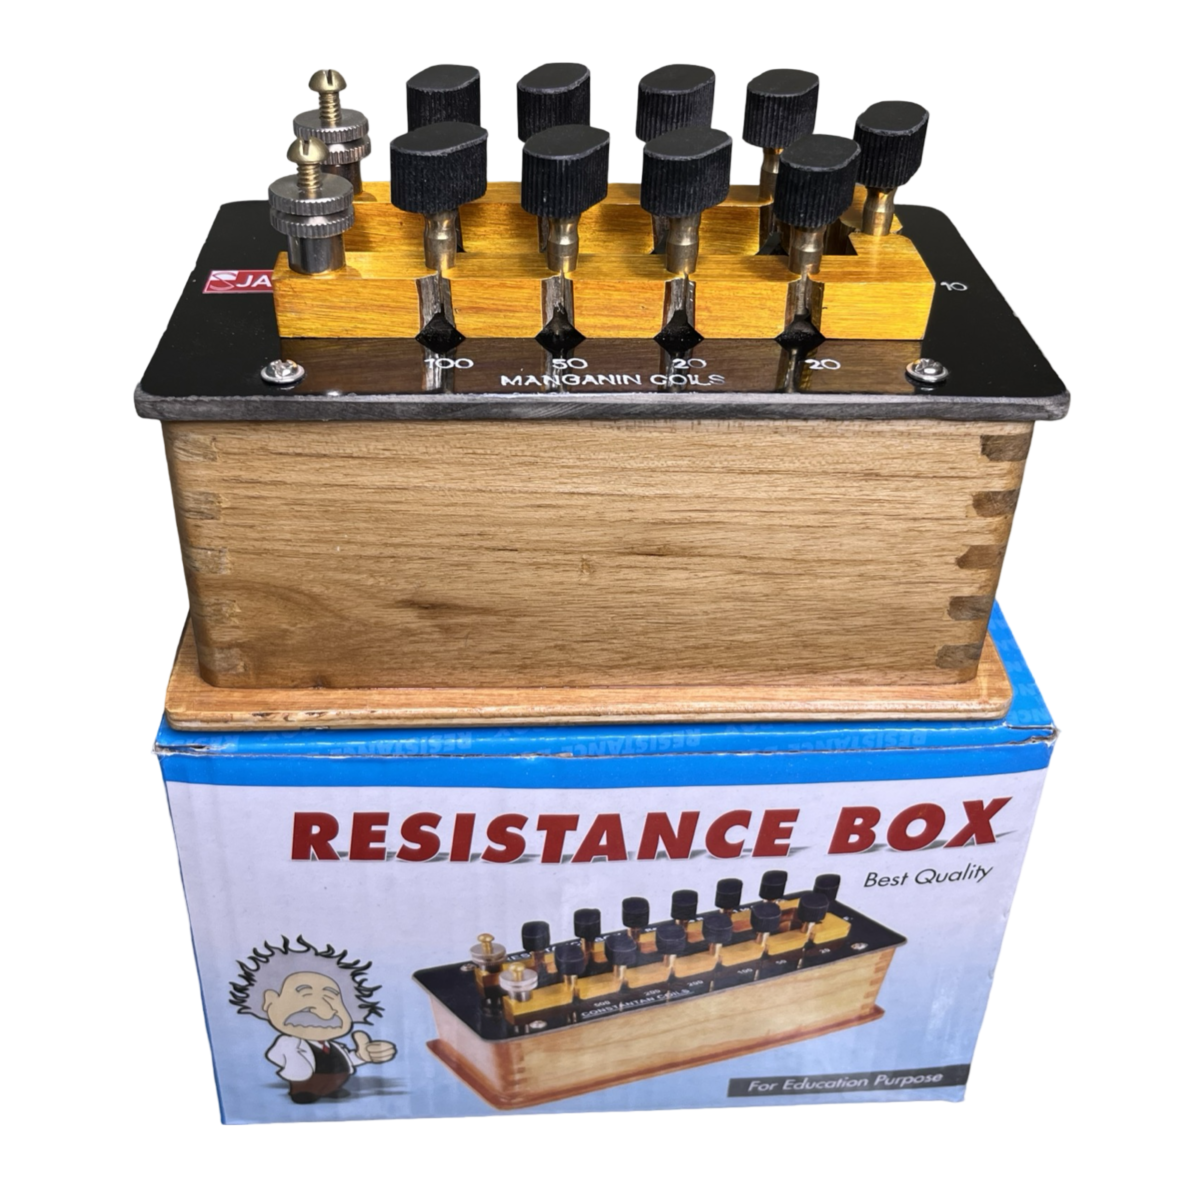 Resistance box jaysee